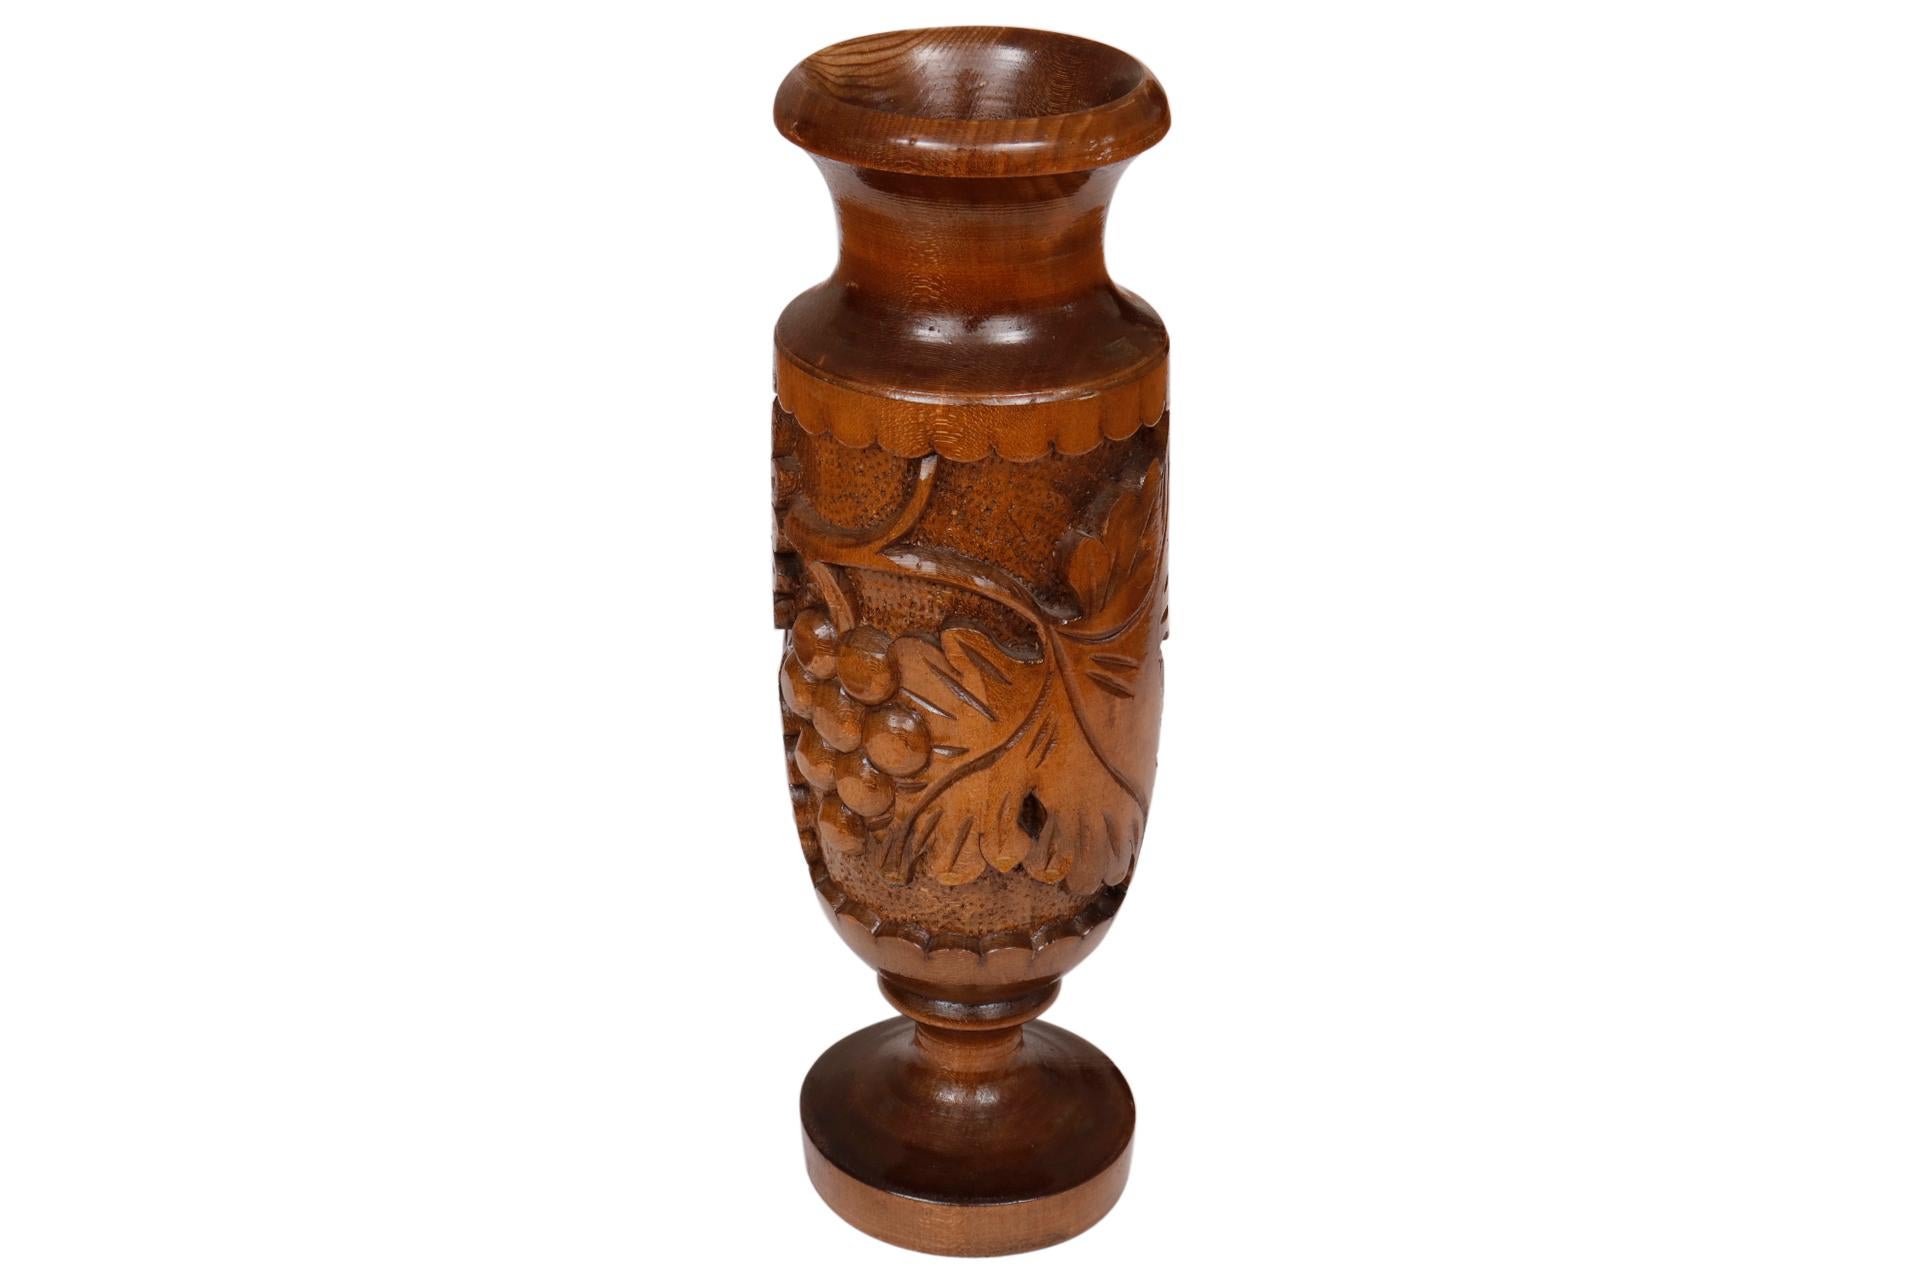 Un vase en bois tourné richement sculpté de raisins et de feuilles de vigne, encadré d'un bord festonné. La lèvre et le pied sont épais et finement tournés.